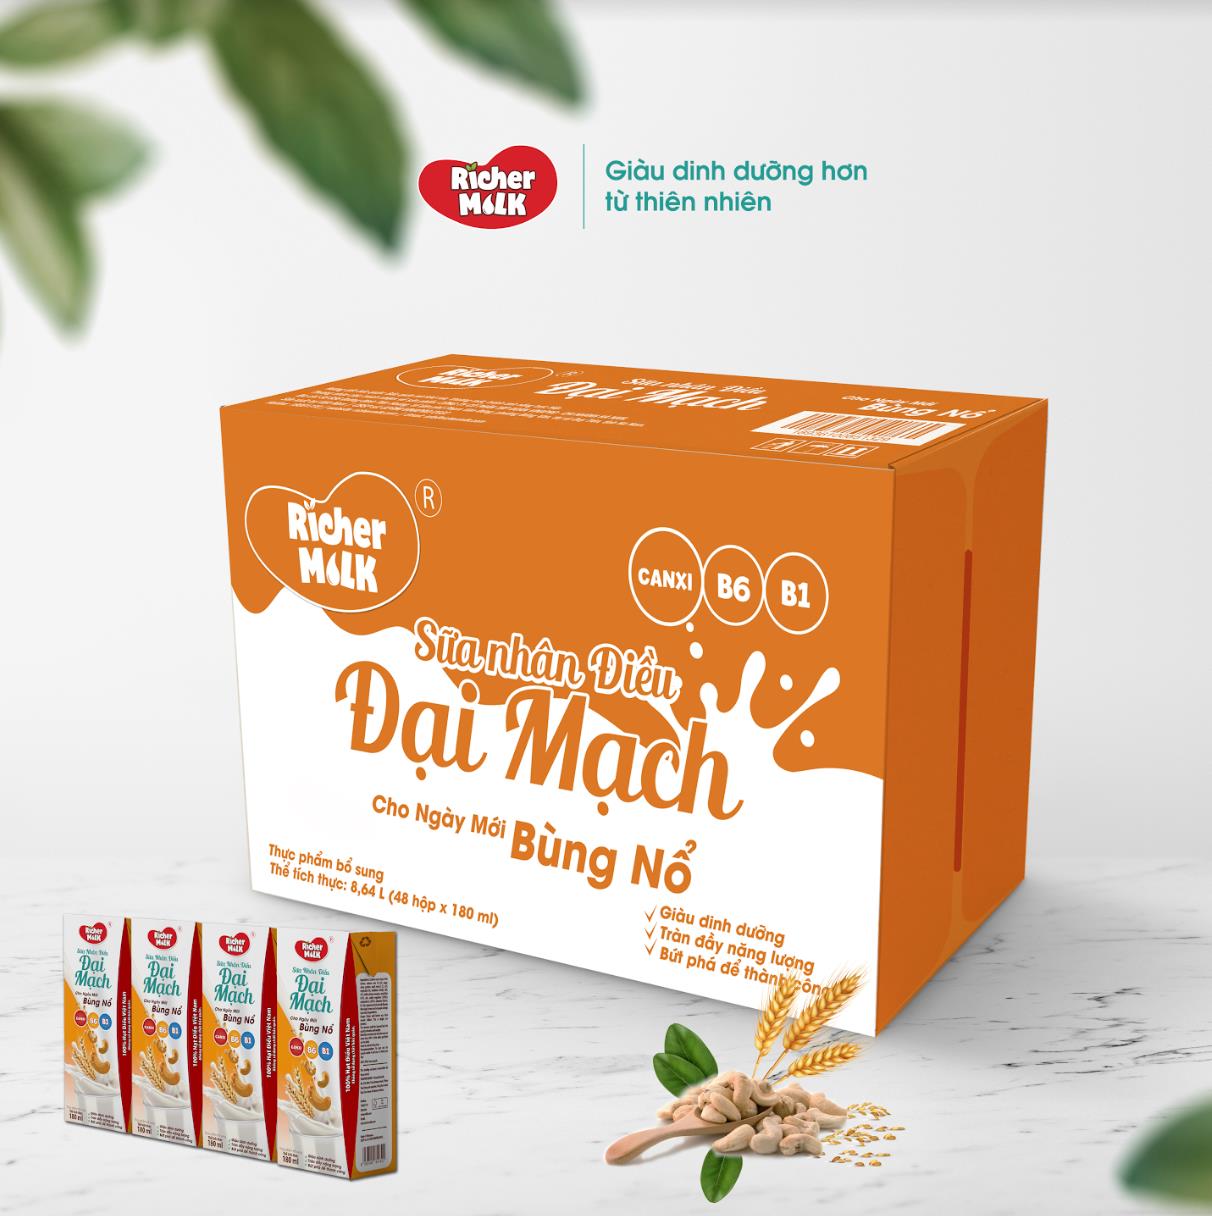 Richer Milk - thương hiệu sữa mang hương vị nguyên bản của hạt điều Việt Nam - Ảnh 1.